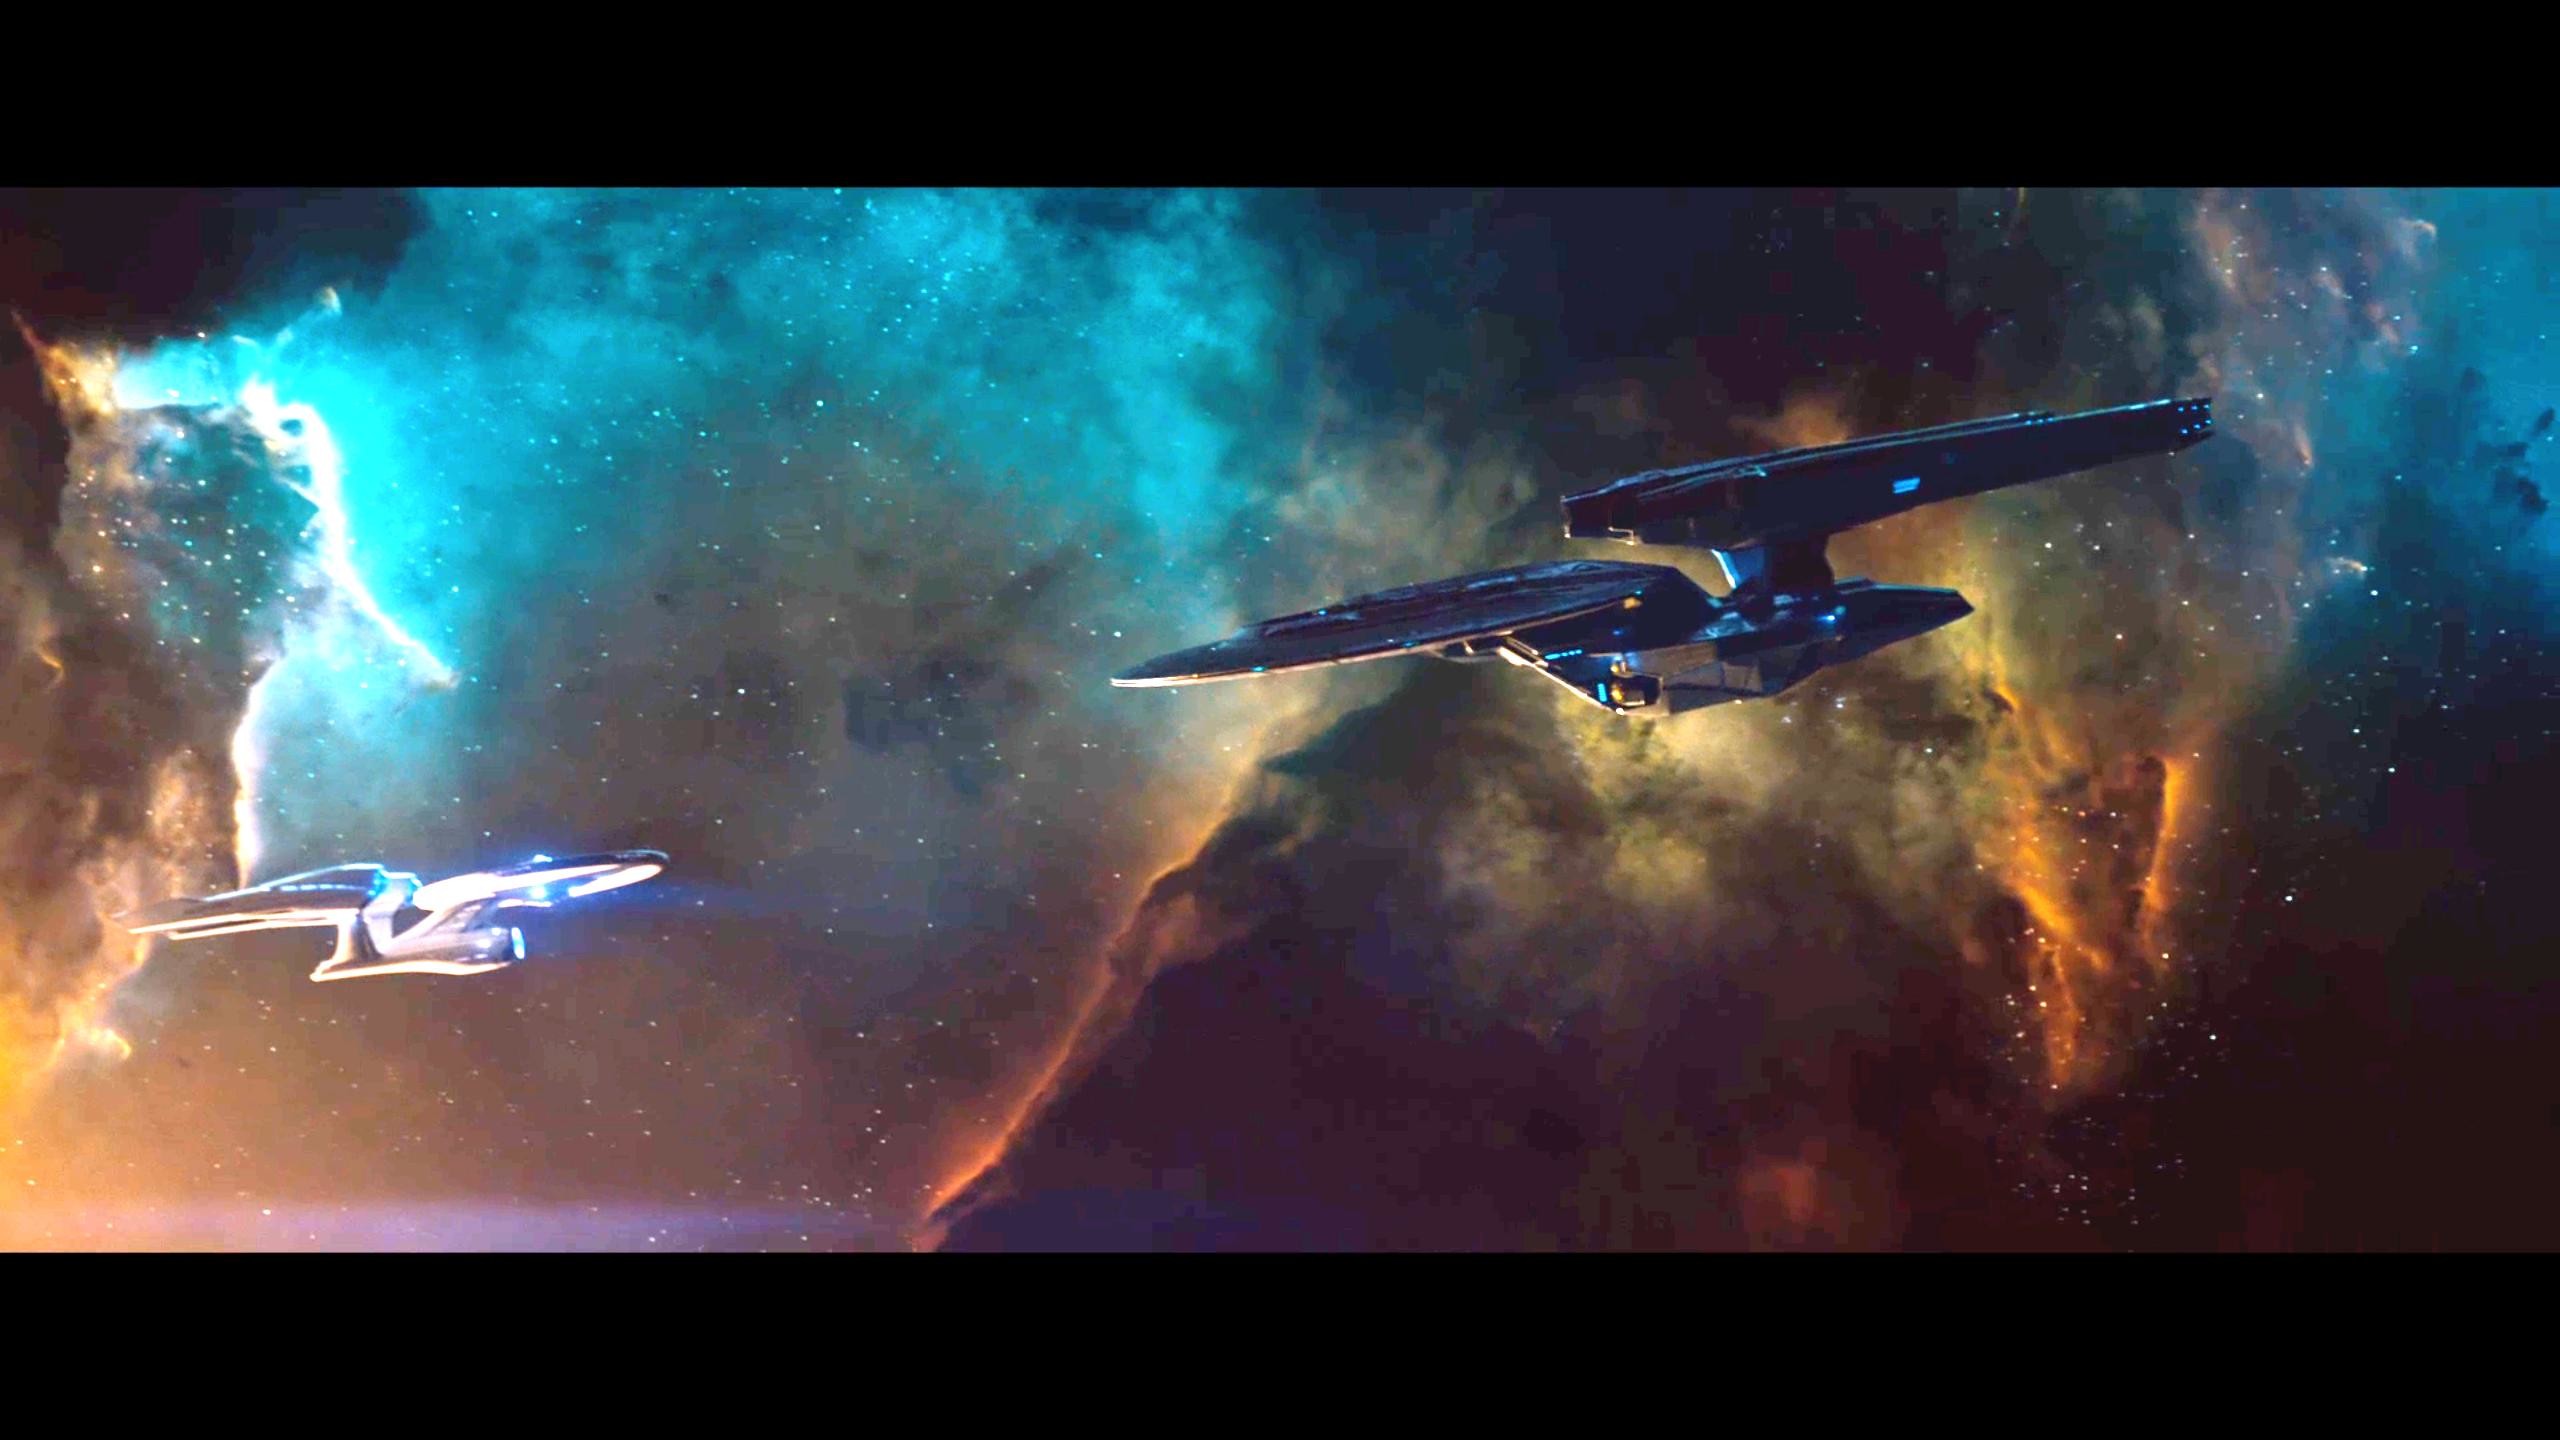 358 best Star Trek Starships images on Pinterest Star trek ships, Trekking and Spaceships